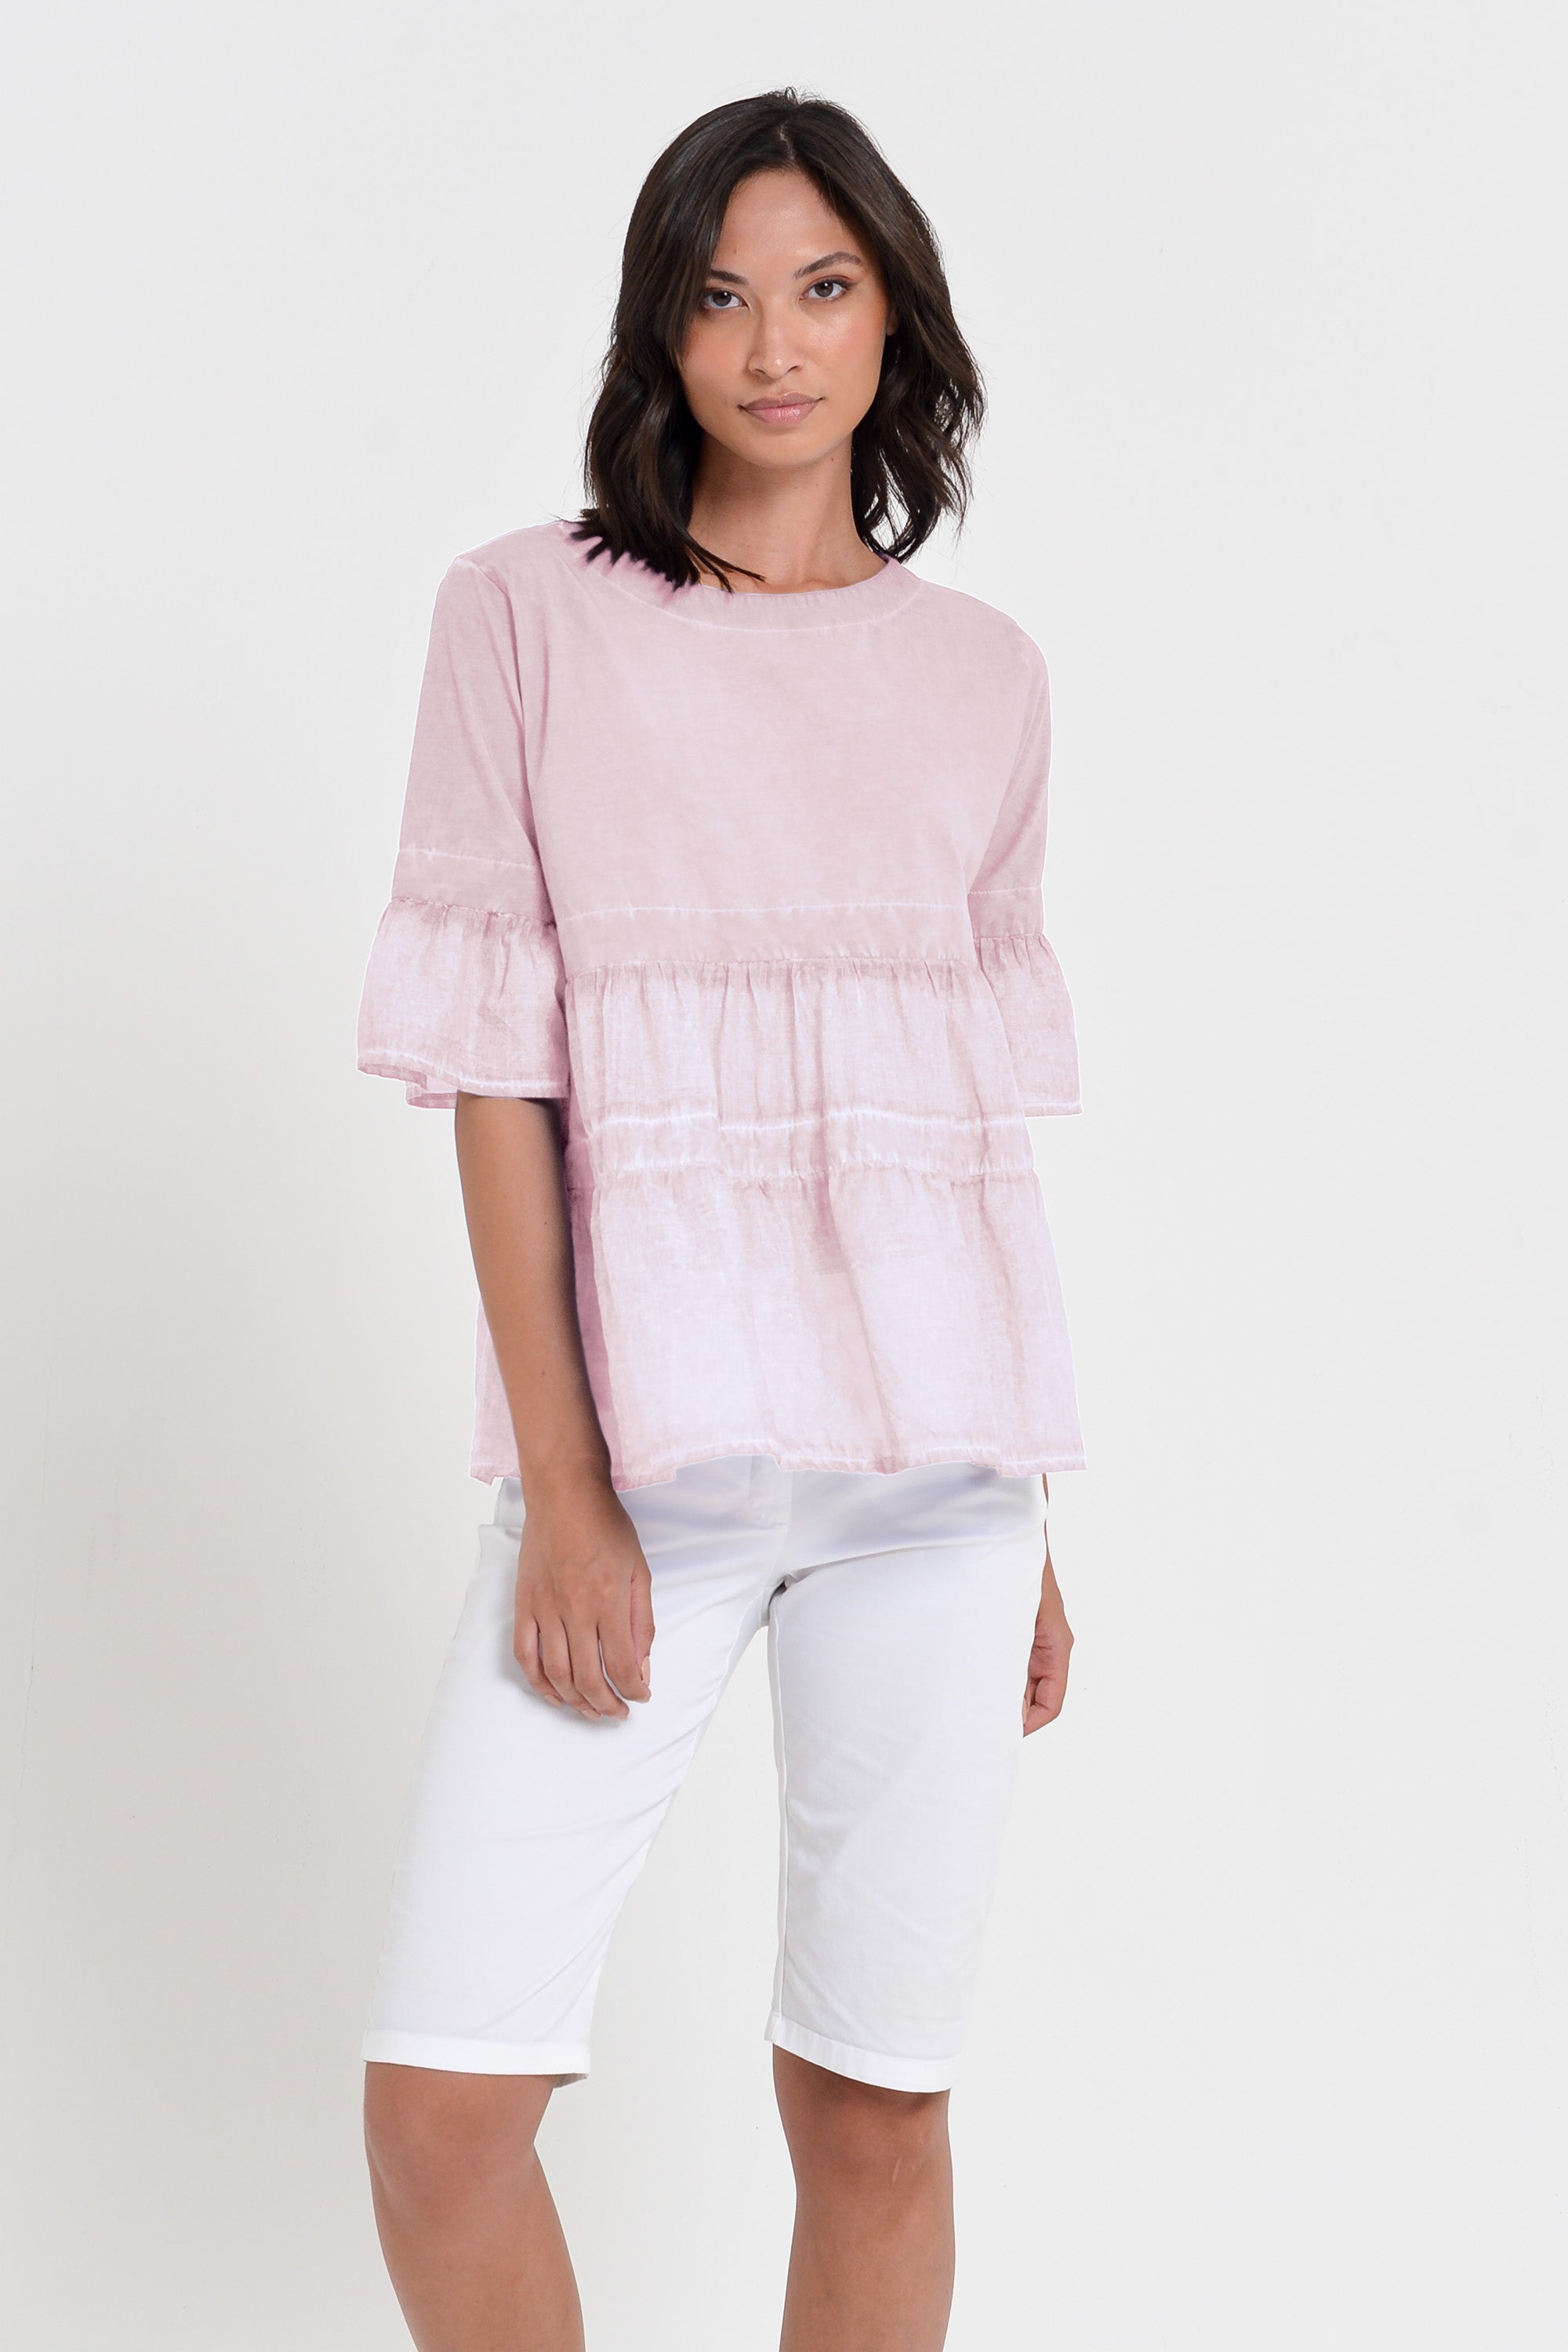 Pep T-Shirt - Women's Short Sleeve Peplum T-Shirt - Rose